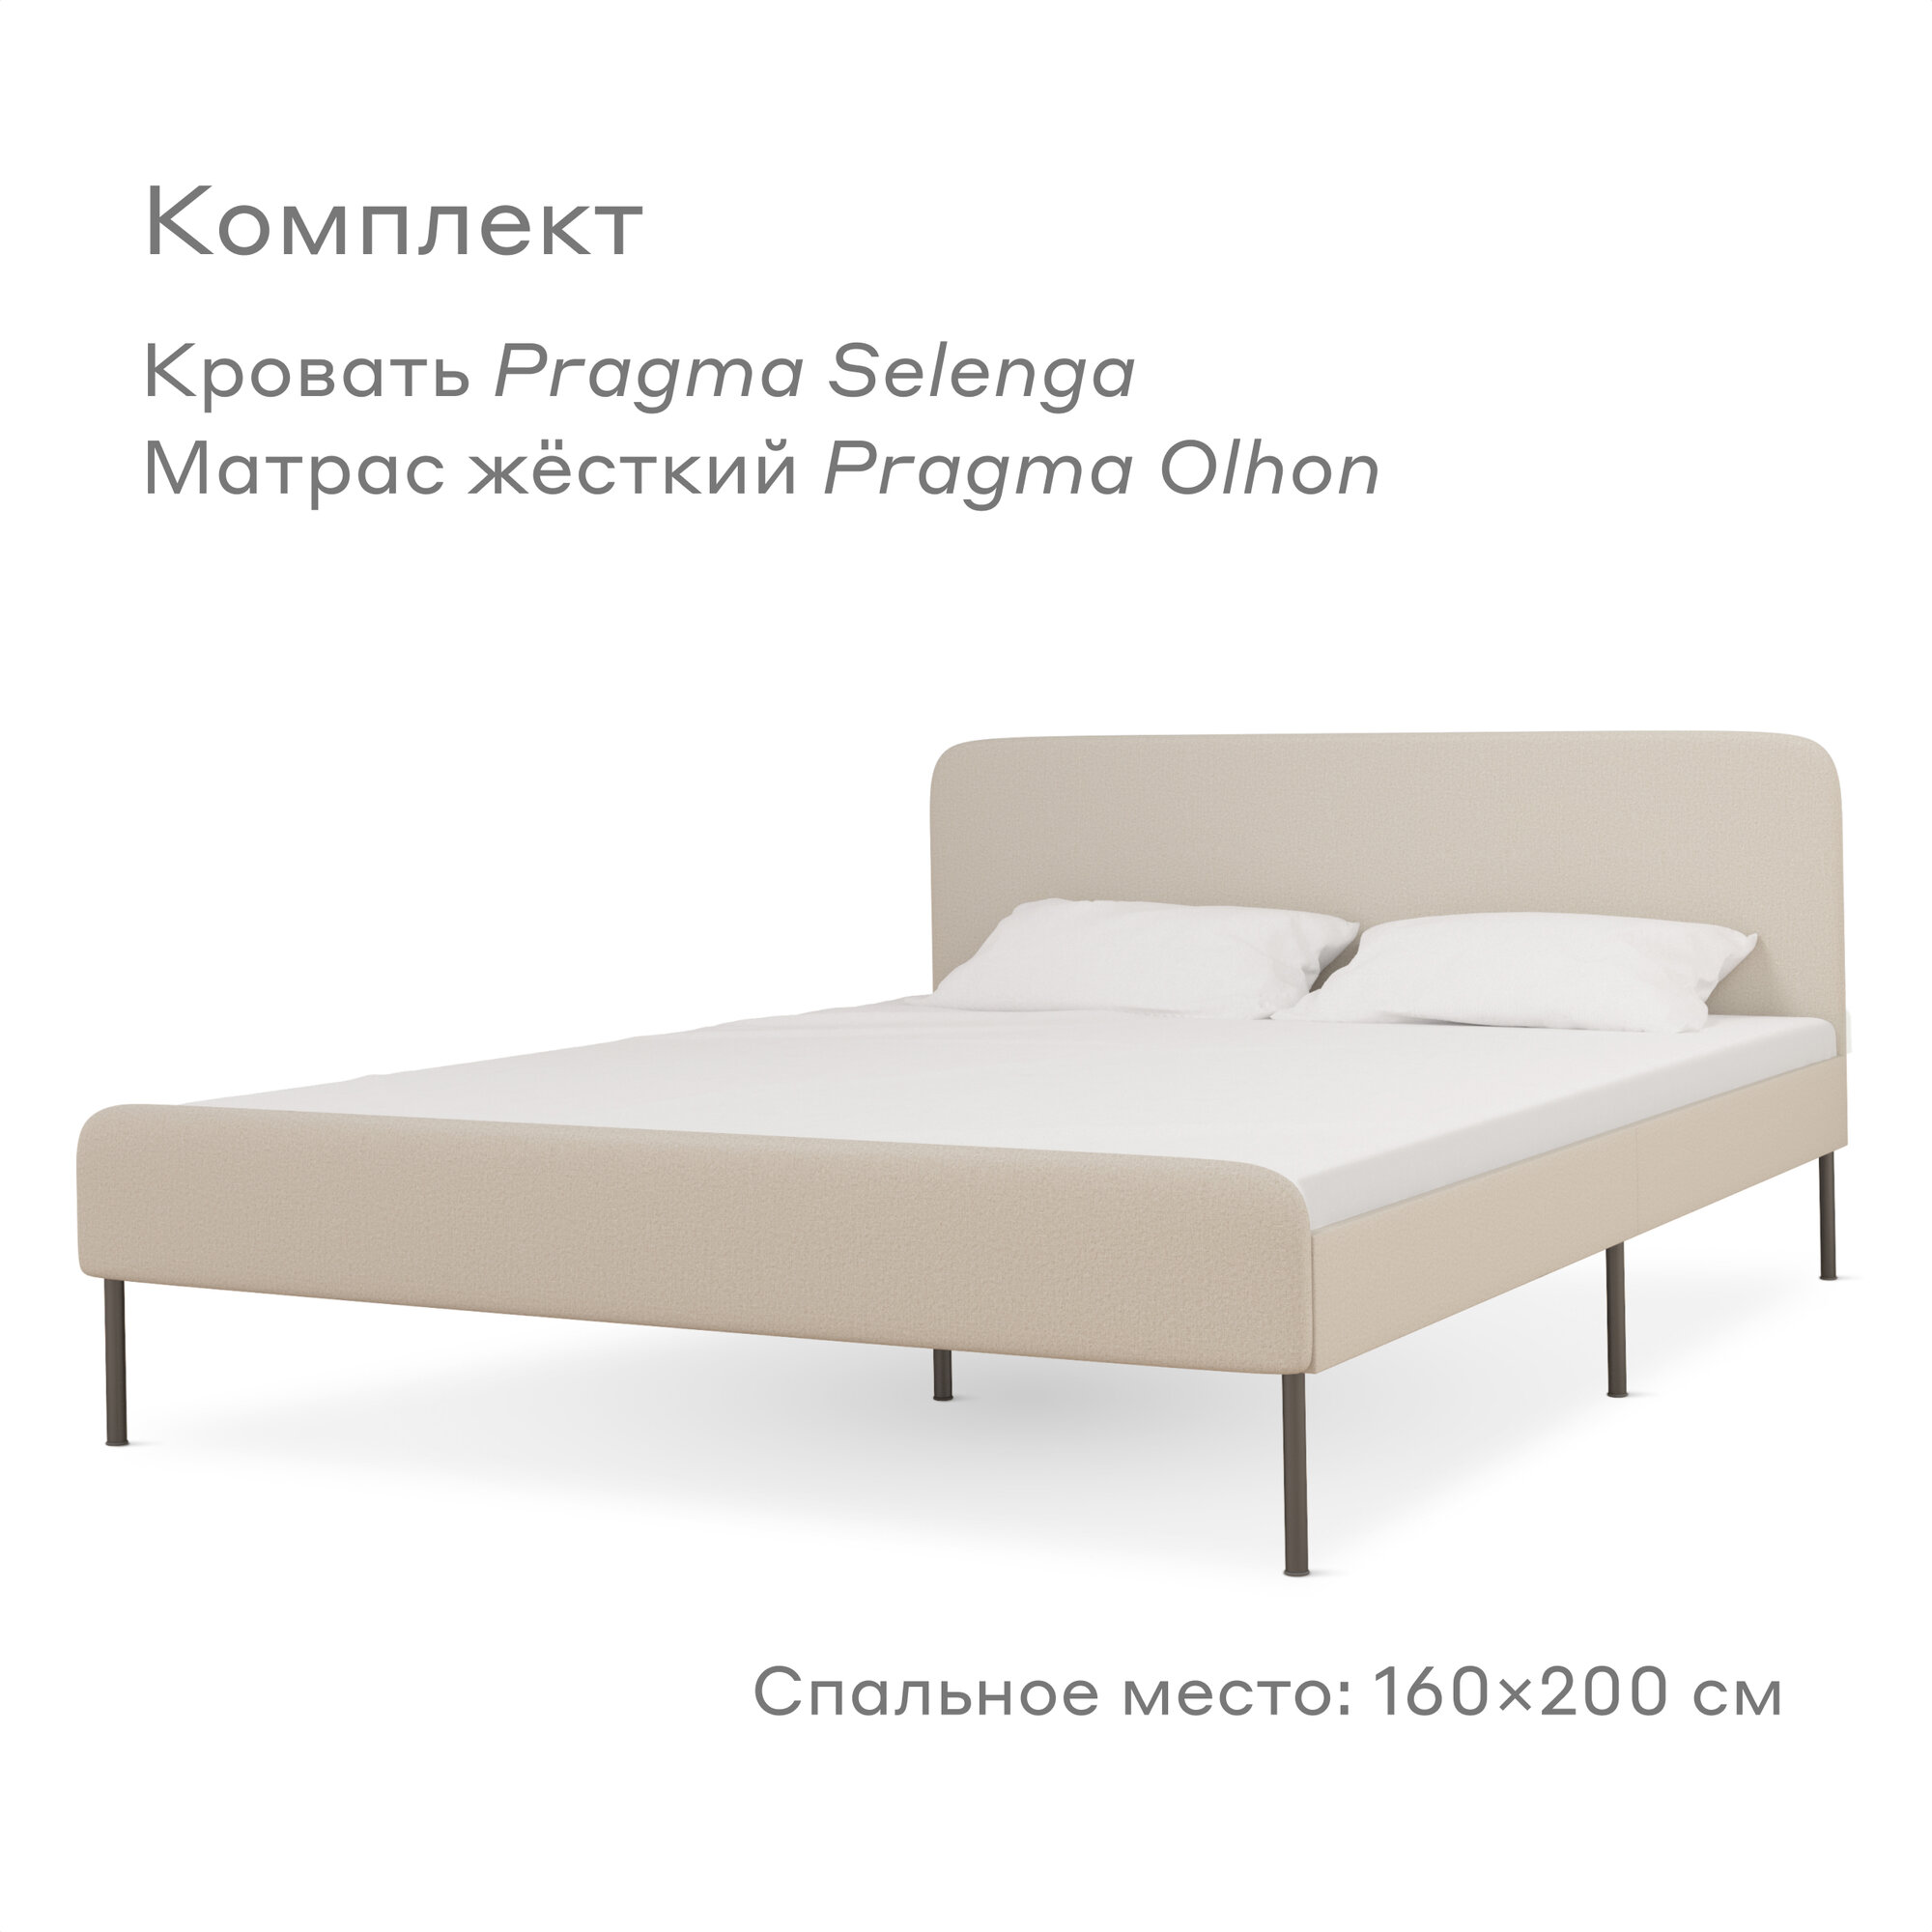 Кровать Pragma Selenga/Olhon с жестким матрасом, размер (ДхШ): 206х164 см, спальное место (ДхШ): 200х160 см, обивка: велюр, с матрасом, цвет: светло-бежевый